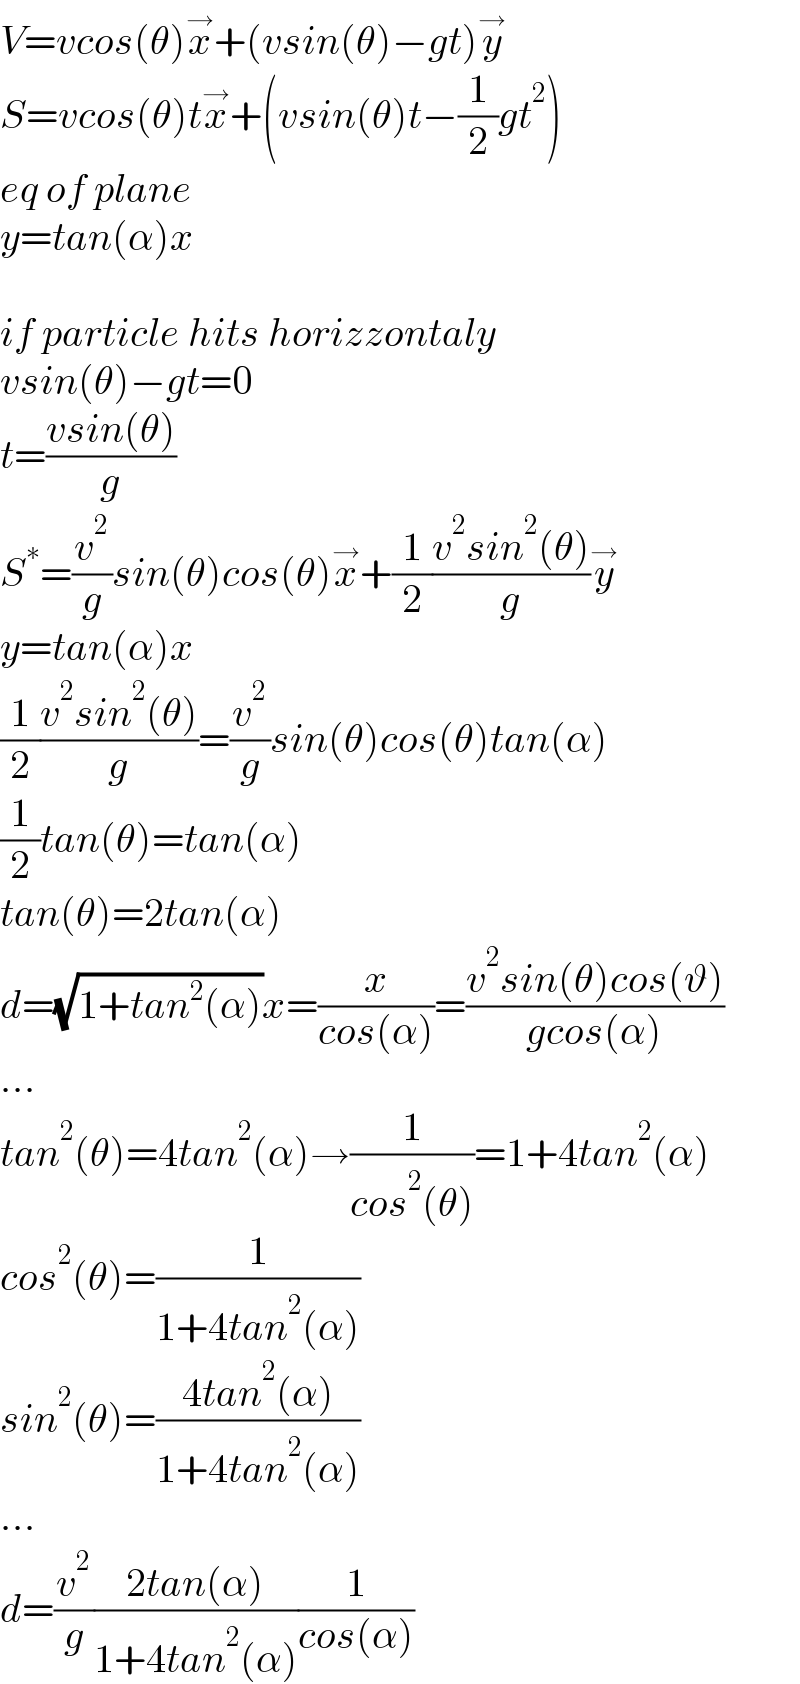 V=vcos(θ)x^→ +(vsin(θ)−gt)y^→   S=vcos(θ)tx^→ +(vsin(θ)t−(1/2)gt^2 )  eq of plane  y=tan(α)x    if particle hits horizzontaly  vsin(θ)−gt=0  t=((vsin(θ))/g)  S^∗ =(v^2 /g)sin(θ)cos(θ)x^→ +(1/2)((v^2 sin^2 (θ))/g)y^→   y=tan(α)x  (1/2)((v^2 sin^2 (θ))/g)=(v^2 /g)sin(θ)cos(θ)tan(α)  (1/2)tan(θ)=tan(α)  tan(θ)=2tan(α)  d=(√(1+tan^2 (α)))x=(x/(cos(α)))=((v^2 sin(θ)cos(ϑ))/(gcos(α)))  ...  tan^2 (θ)=4tan^2 (α)→(1/(cos^2 (θ)))=1+4tan^2 (α)  cos^2 (θ)=(1/(1+4tan^2 (α)))  sin^2 (θ)=((4tan^2 (α))/(1+4tan^2 (α)))  ...  d=(v^2 /g)((2tan(α))/(1+4tan^2 (α)))(1/(cos(α)))  